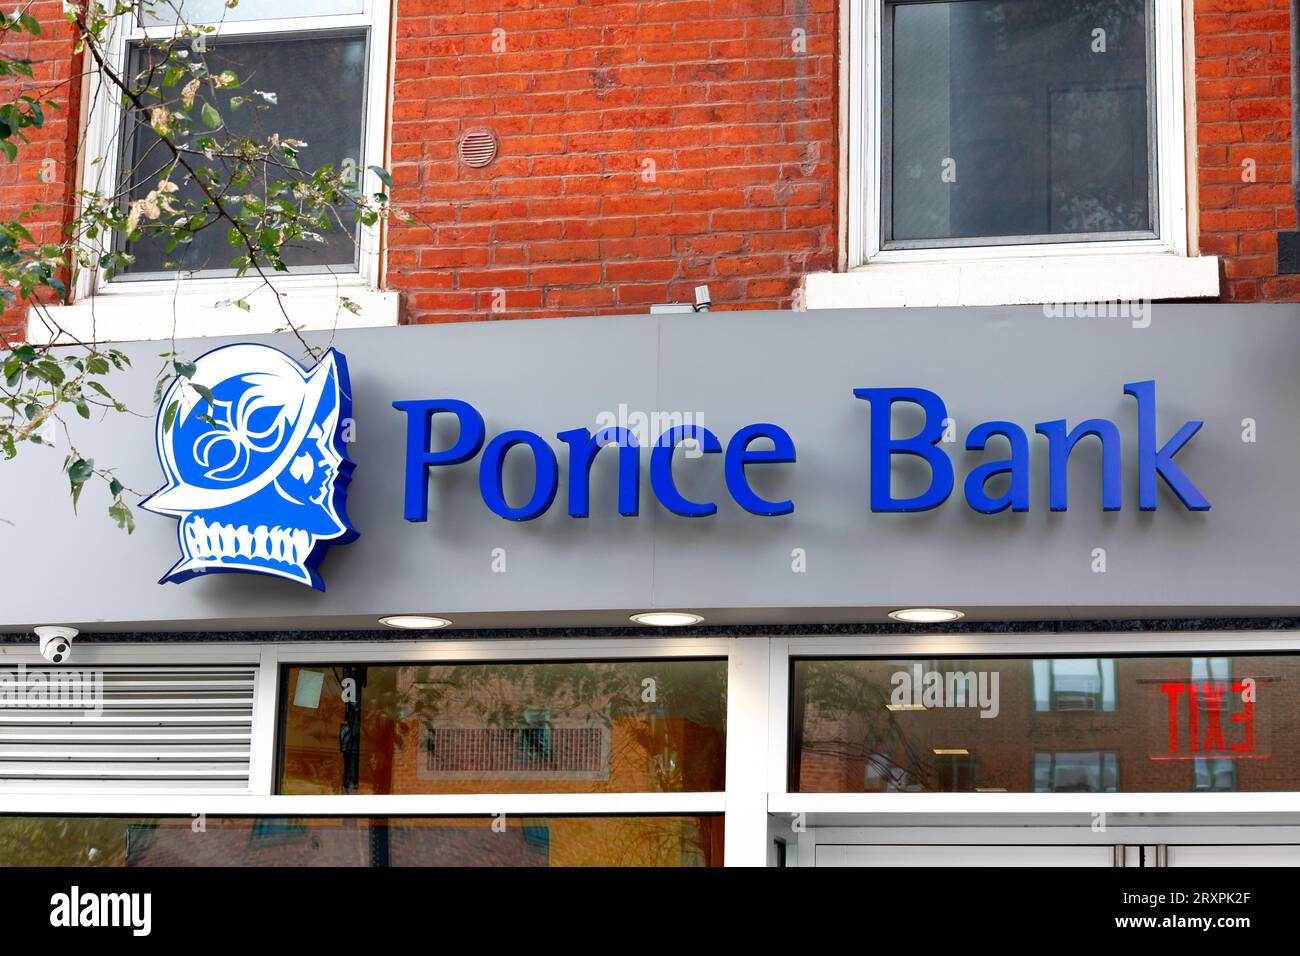 Signalisation pour Ponce Bank, une banque hispanique américaine Latinx basée à New York, dans une succursale à Manhattan. Banque D'Images